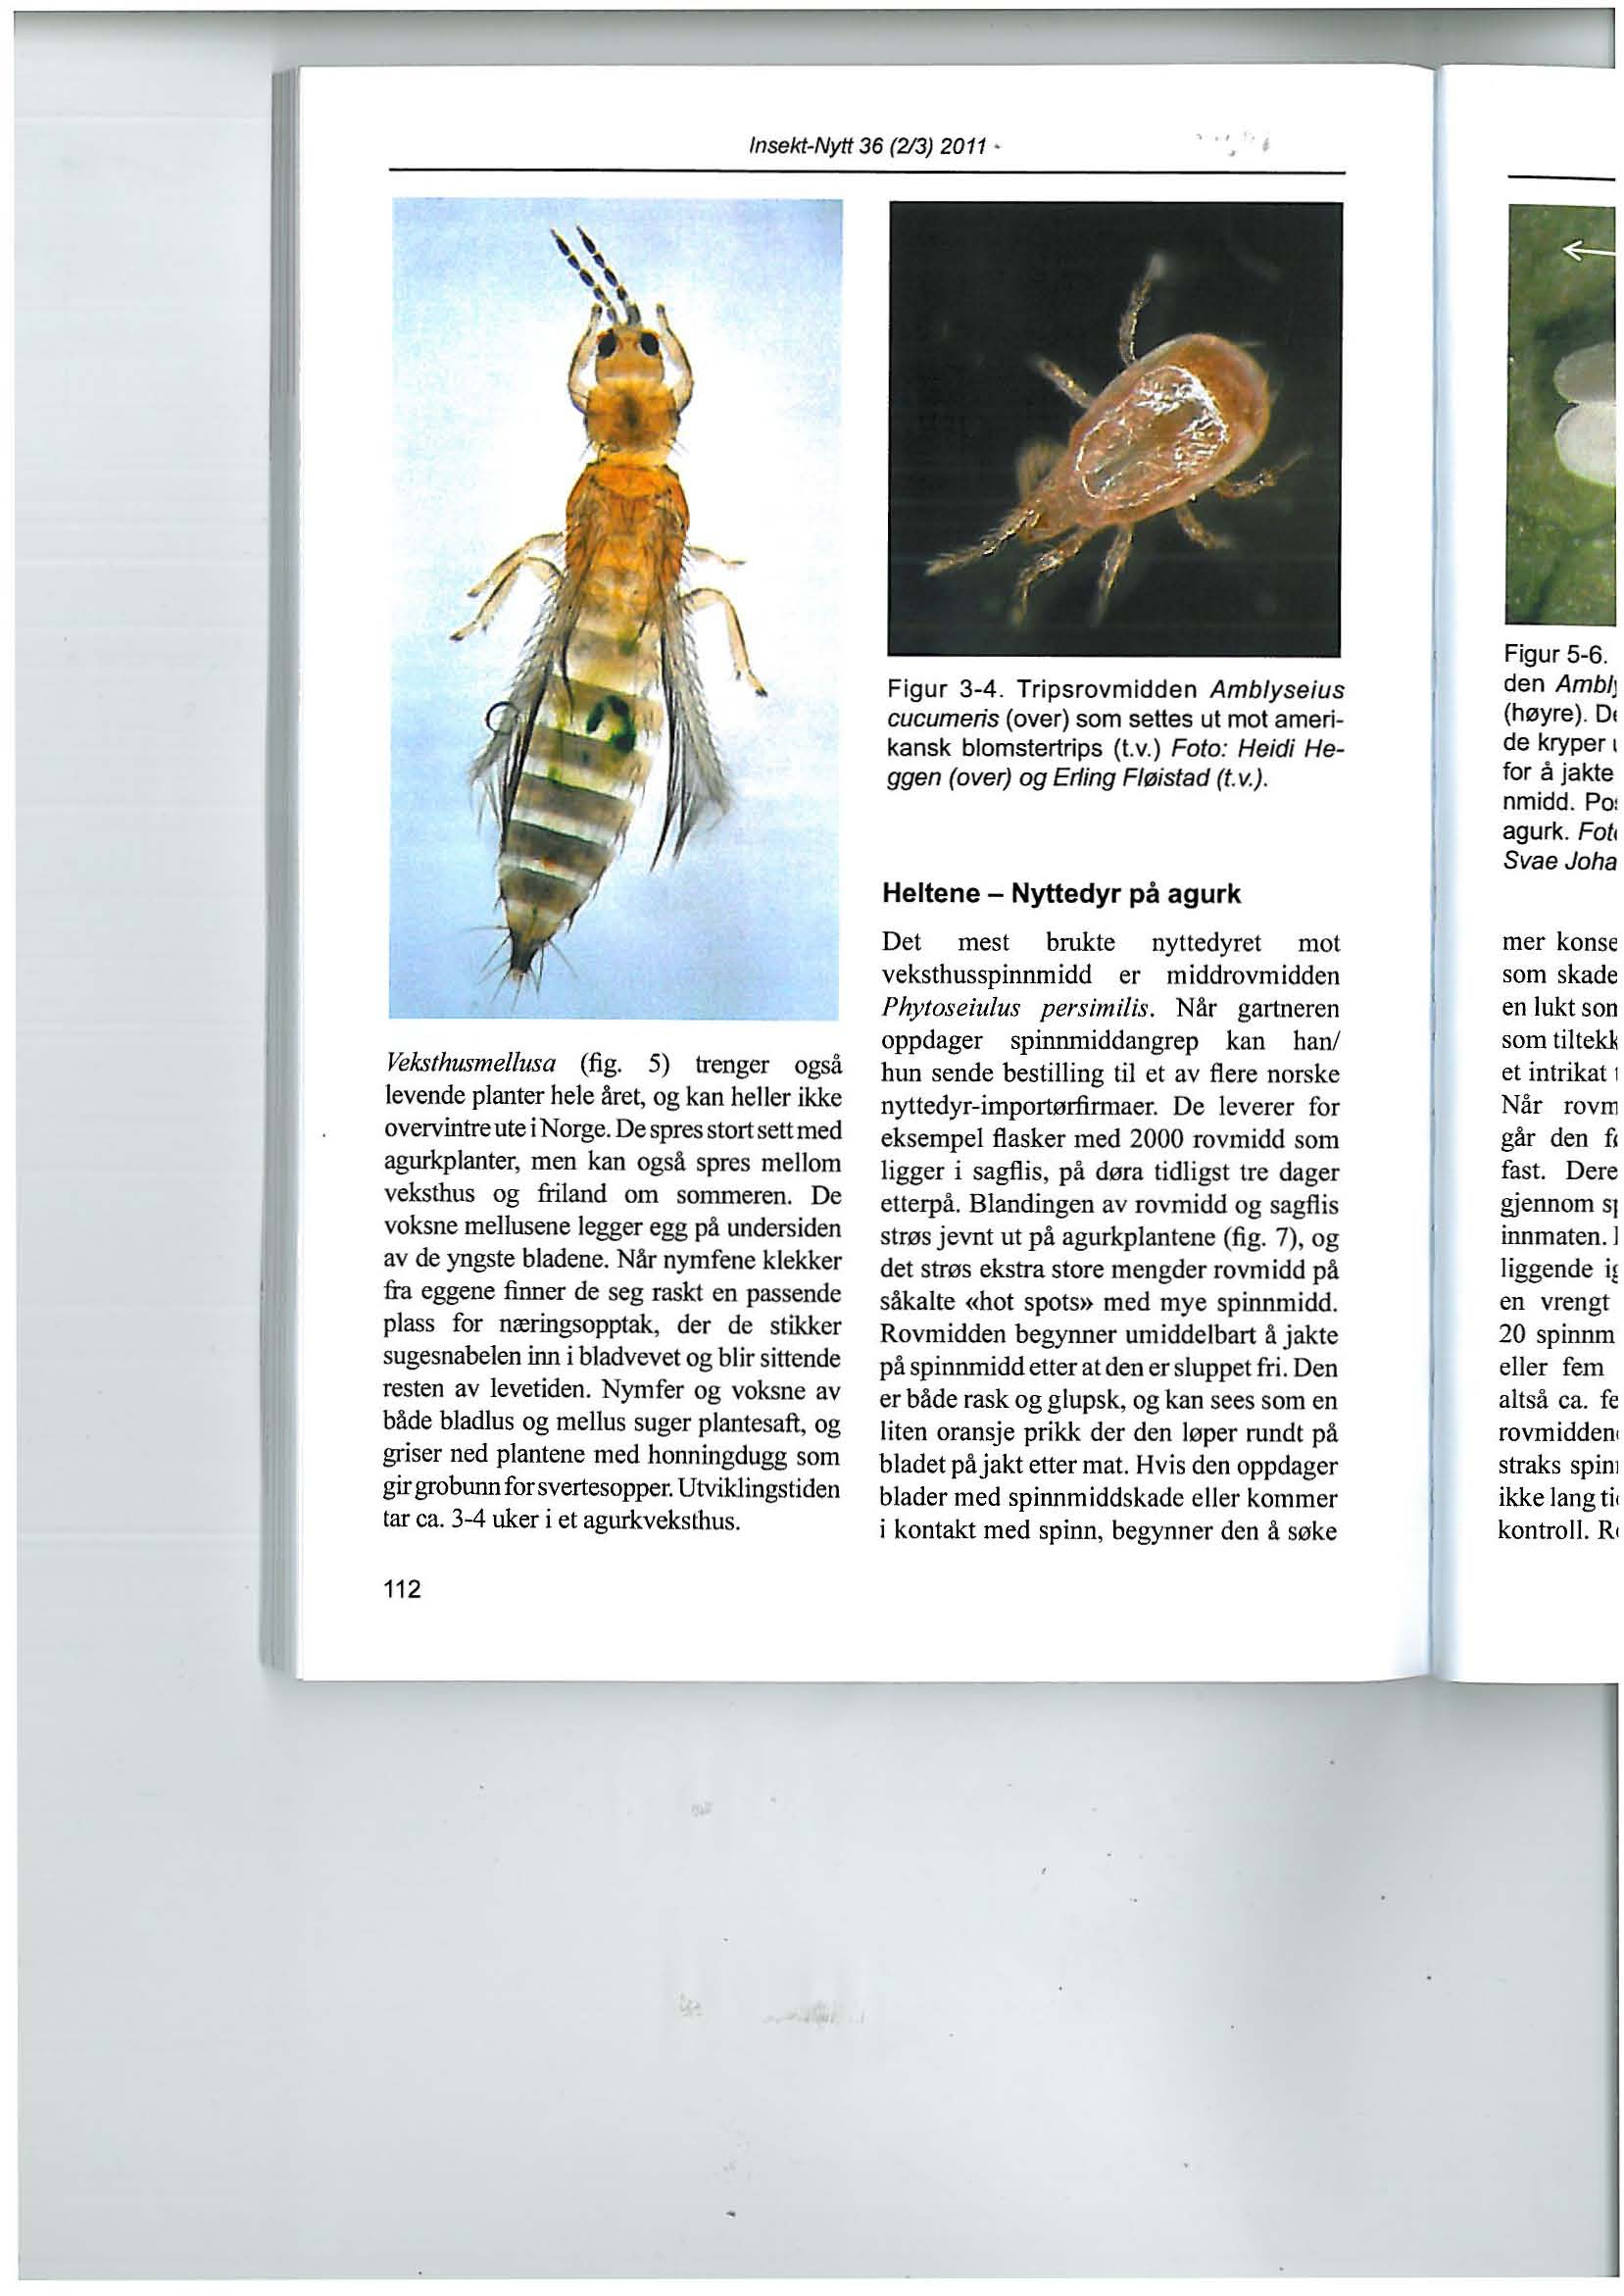 Insekt-Nytt 36 (213) 2011 VeksthusmeJlusa (fig. 5) trenger også levende planter hele åre~ og kan heller ikke overvintre ute i Norge.